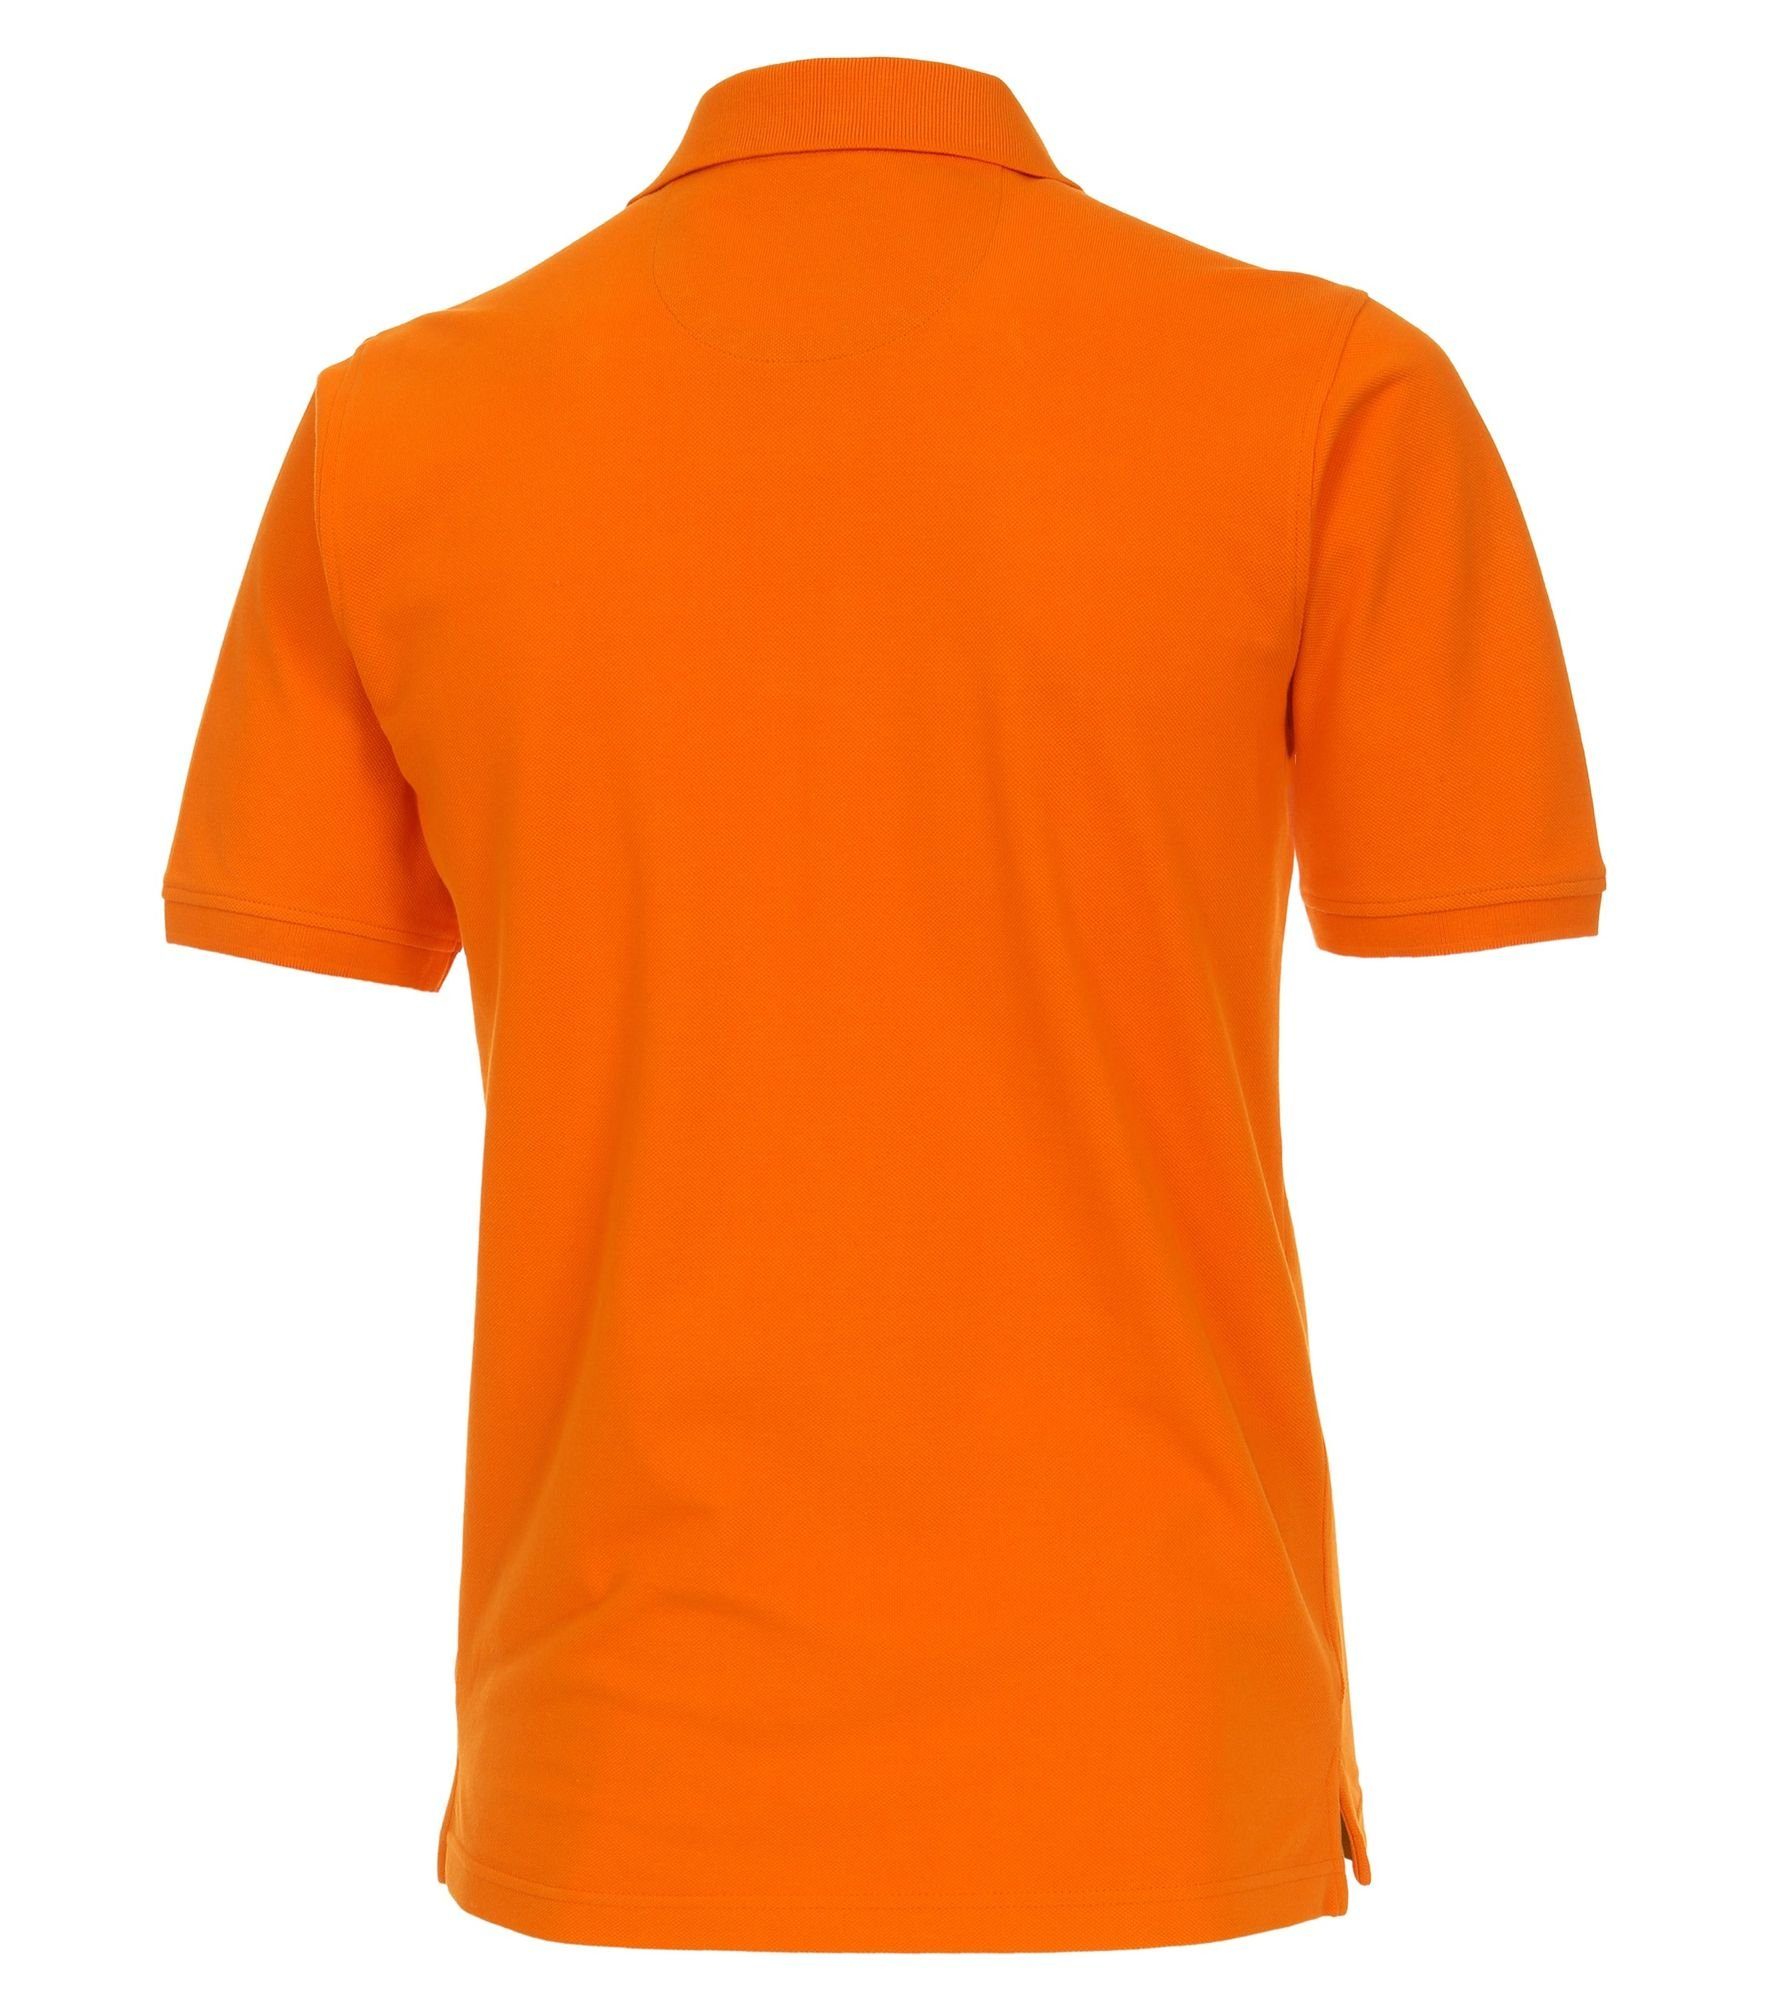 Orange Redmond (201) Piqué Polo-Shirt Poloshirt